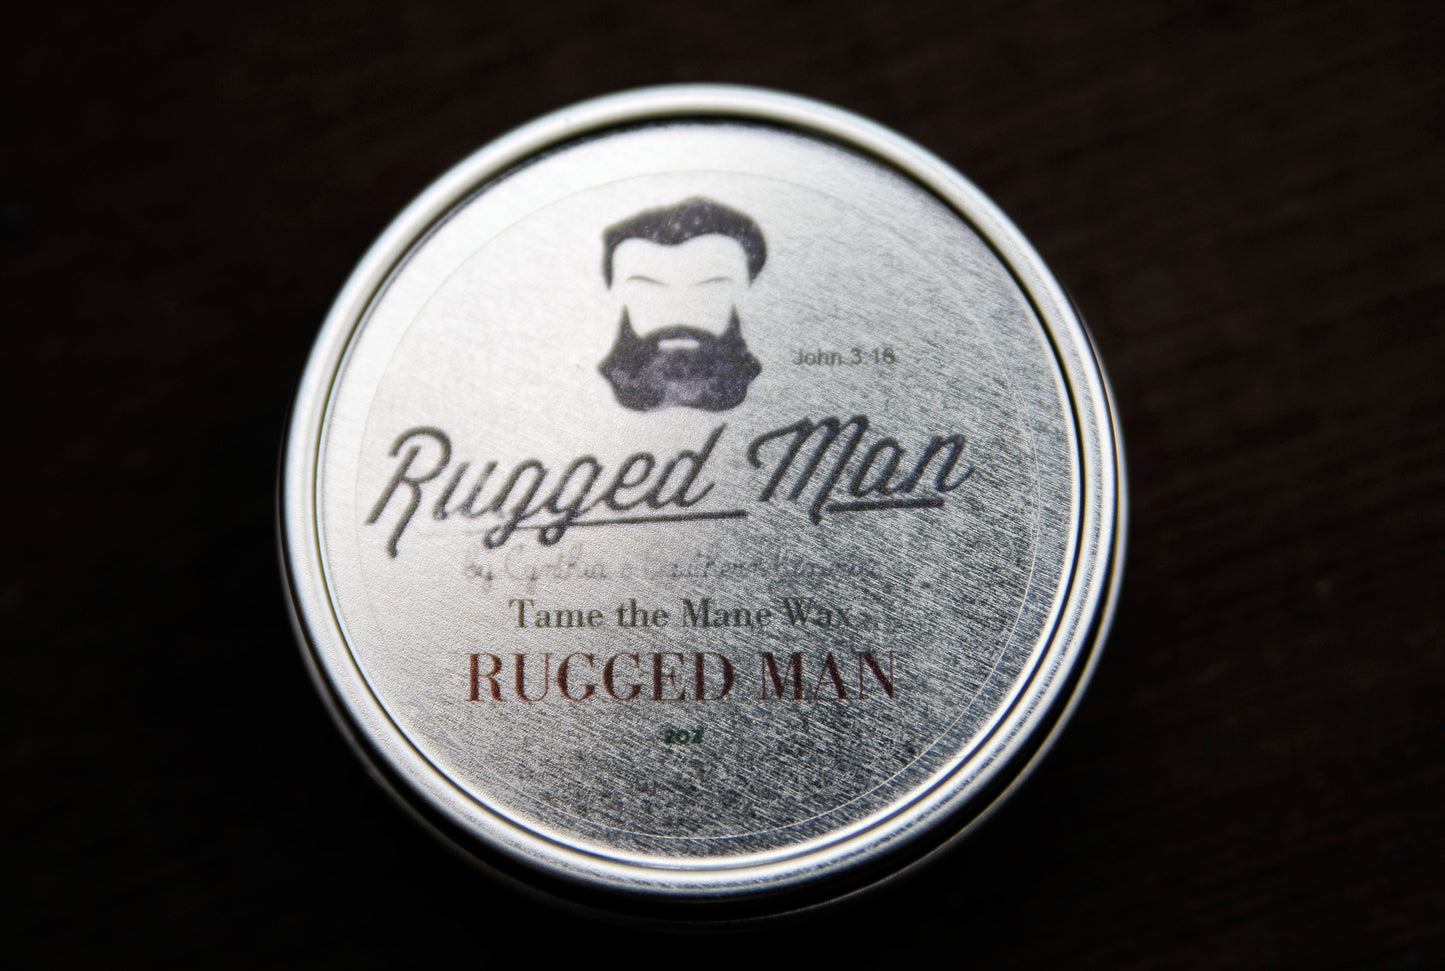 Rugged Man Beard Wax